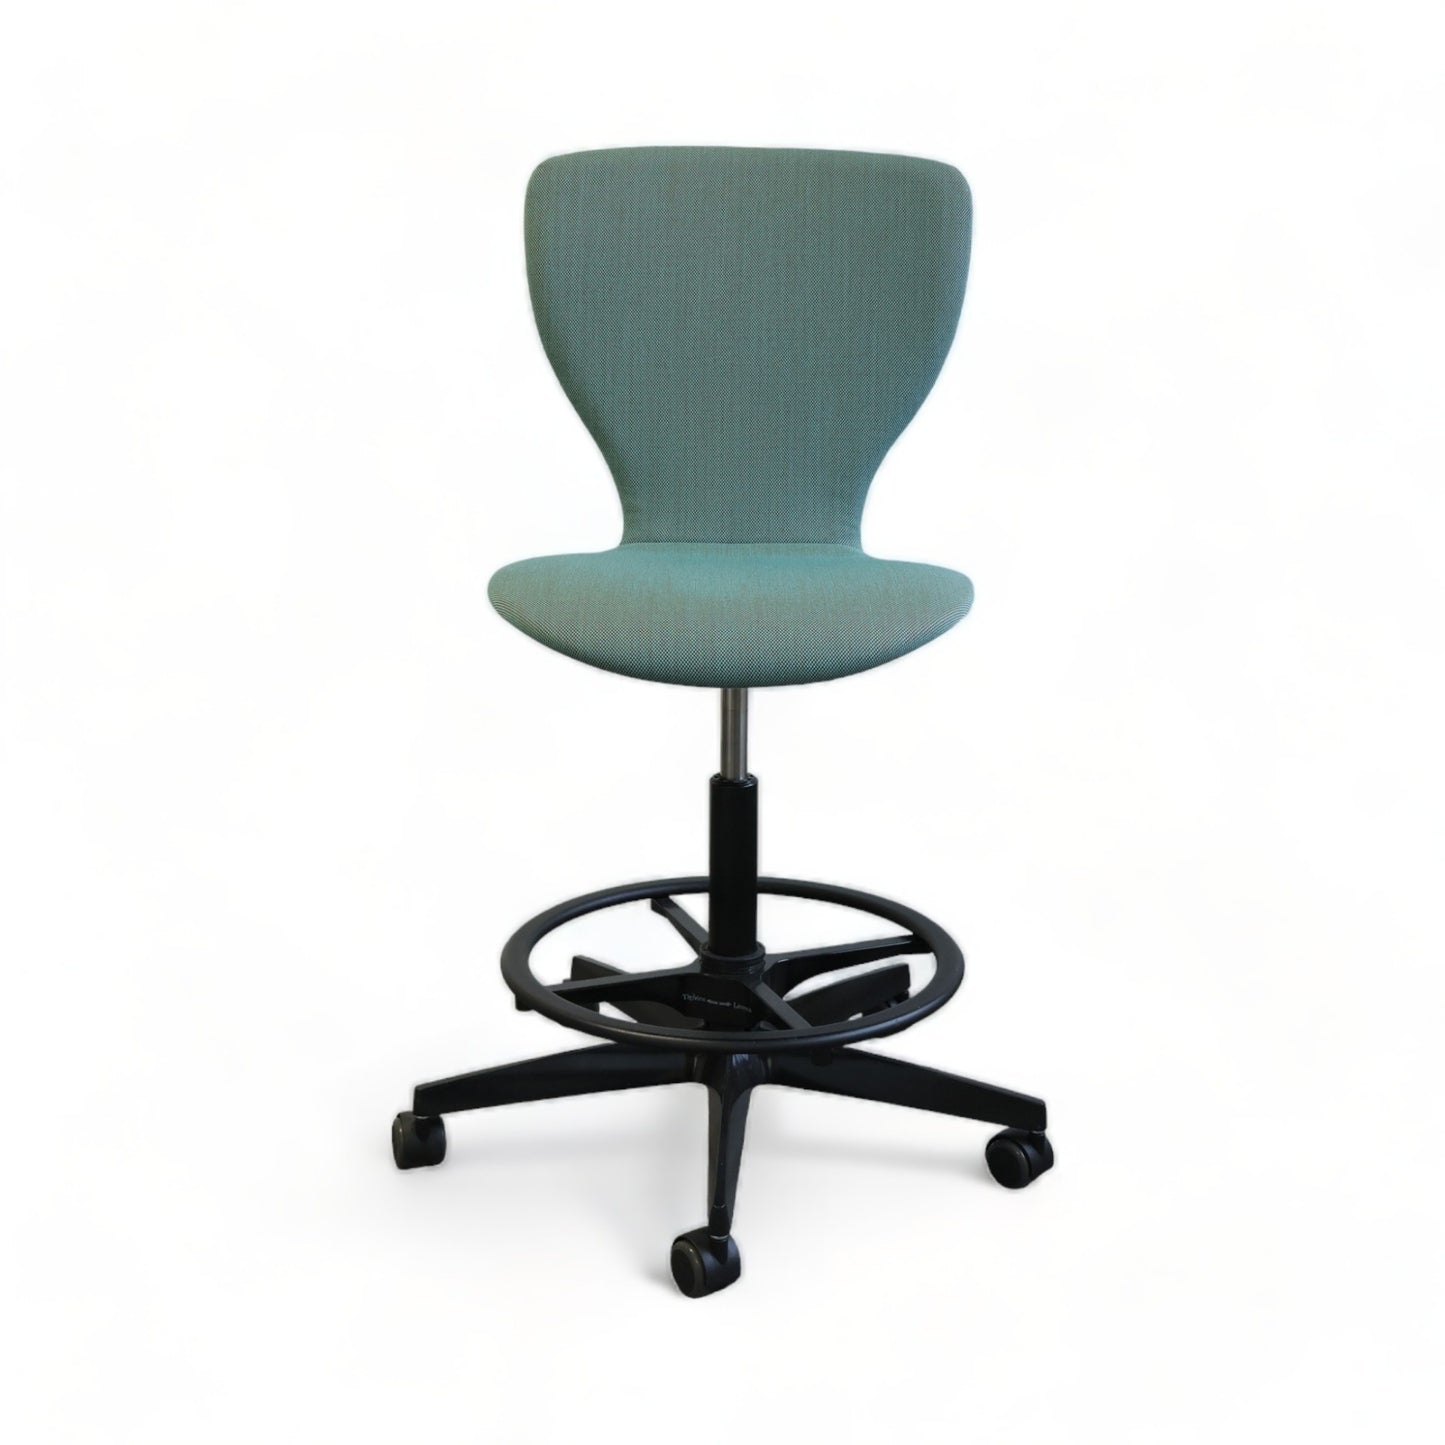 Nyrenset | VS Furniture PantoMove-Soft kontorstol i blå farge